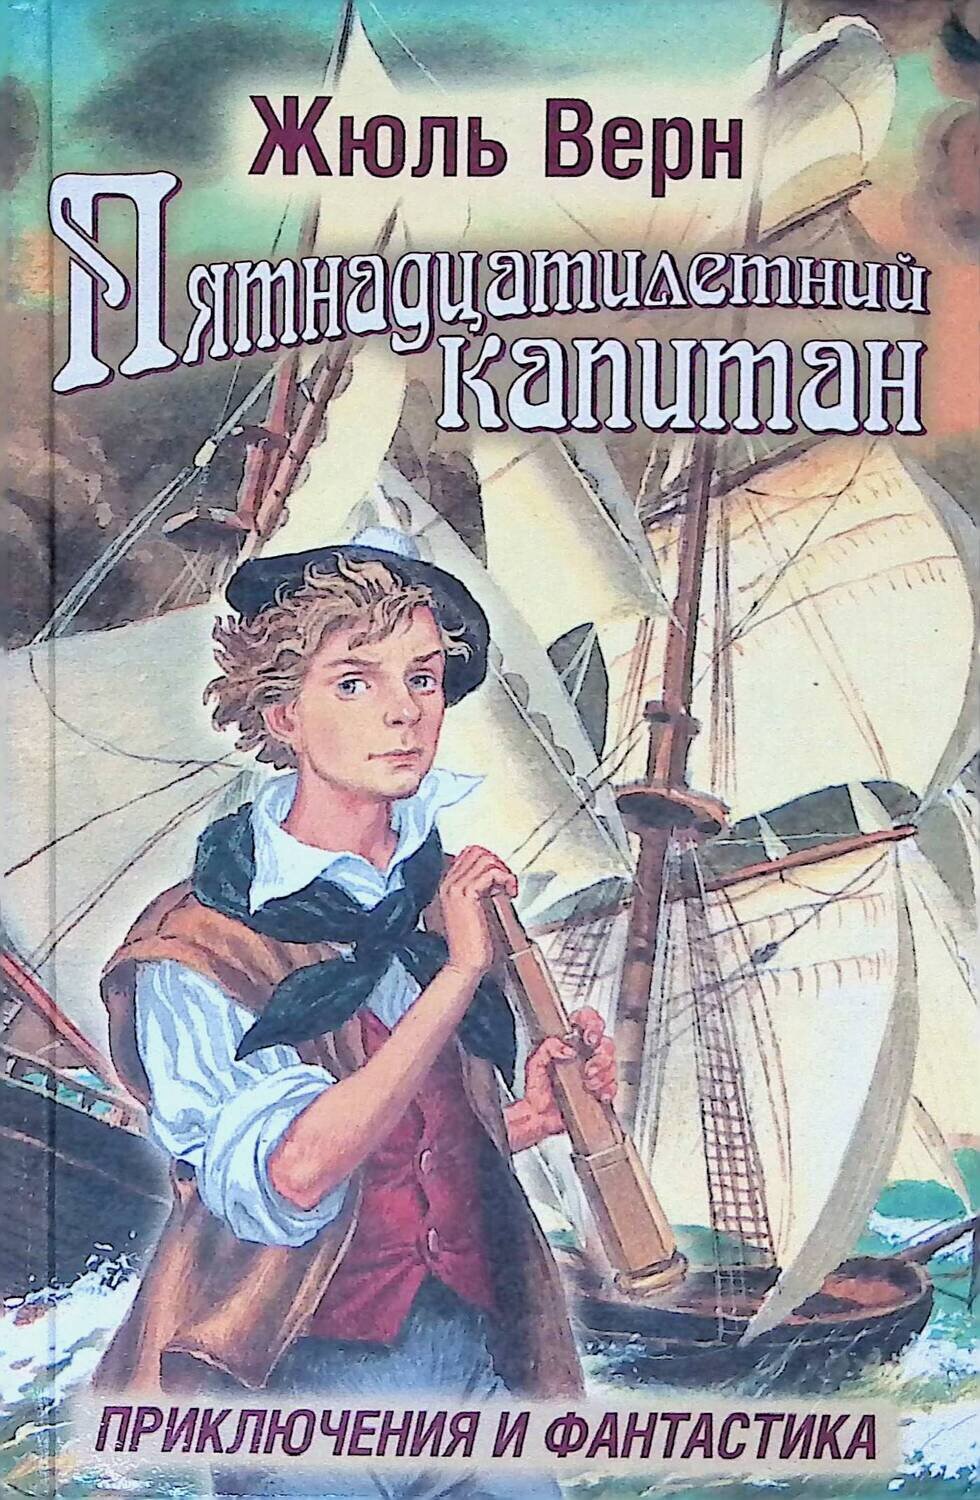 Обложка книги 15летний Капитан Жюль Верн